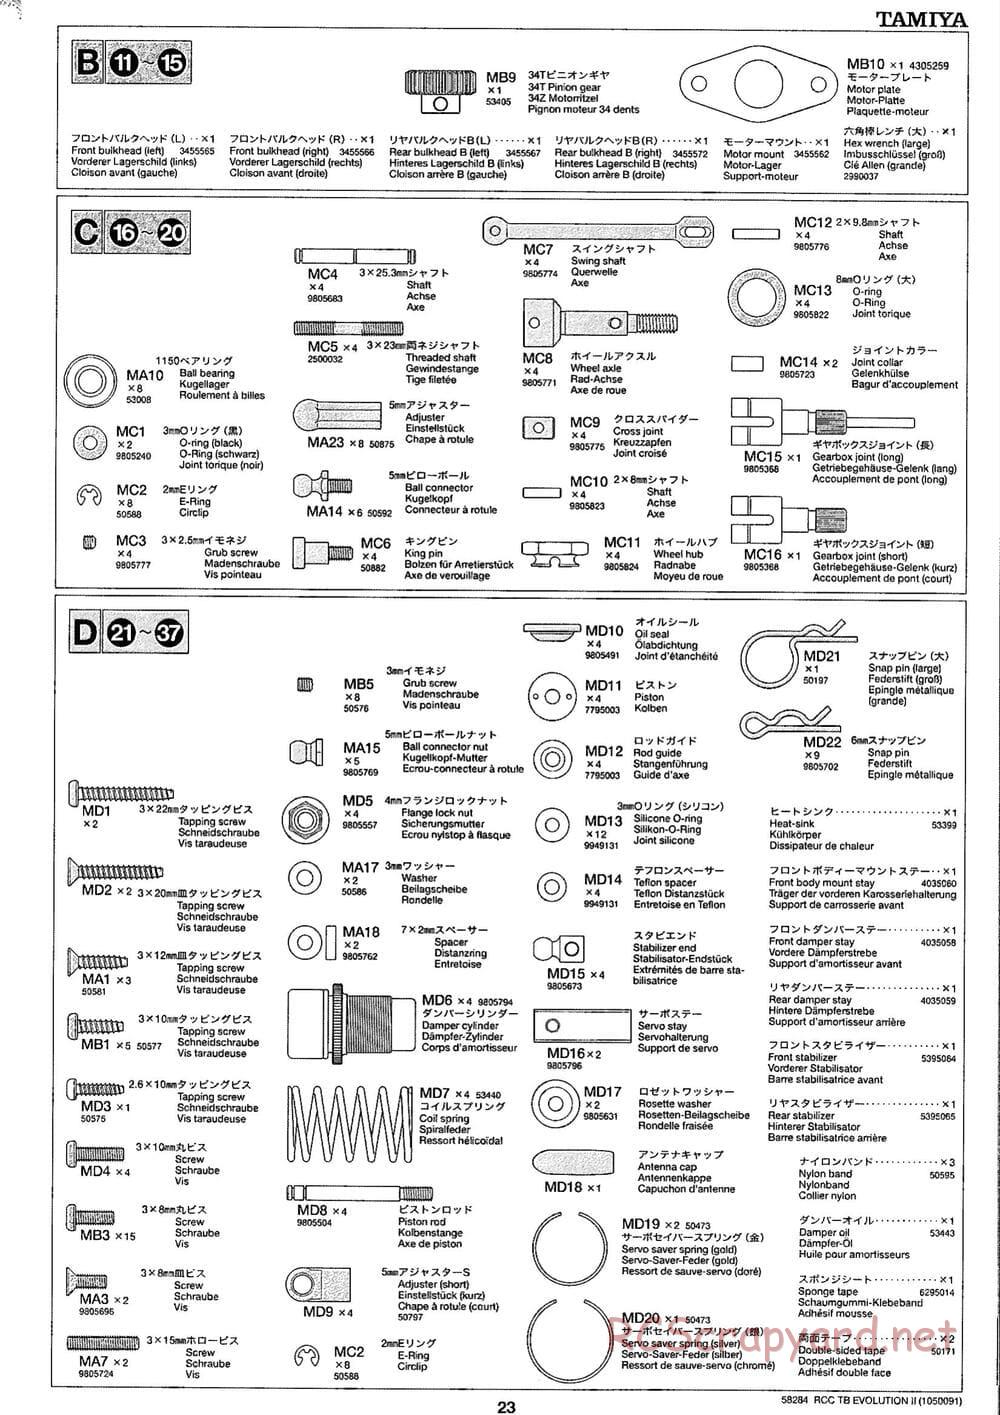 Tamiya - TB Evolution II Chassis - Manual - Page 23